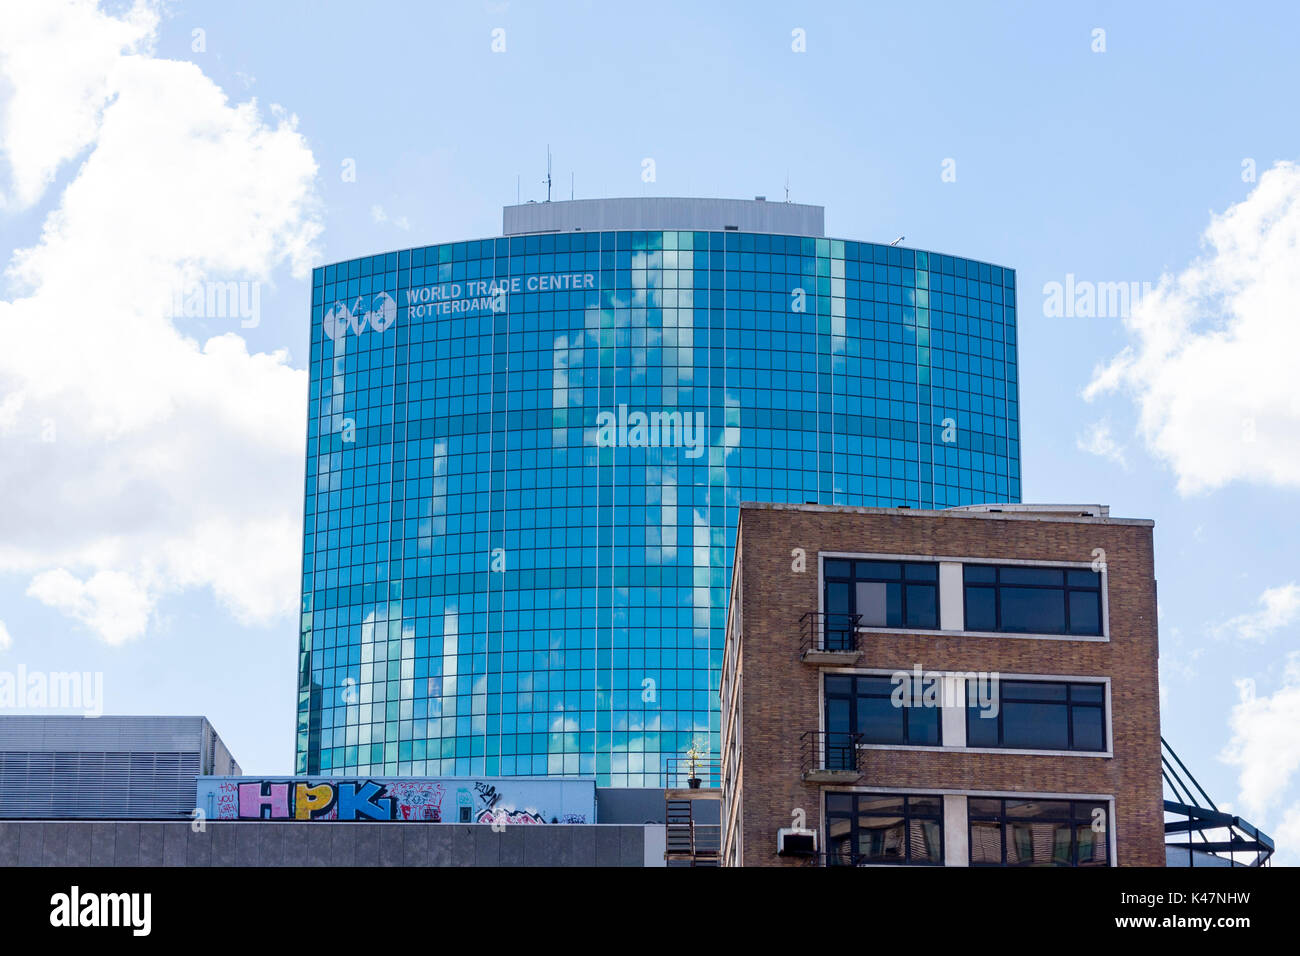 Äußere des Beurs-World Trade Center, Rotterdam, Niederlande Stockfoto